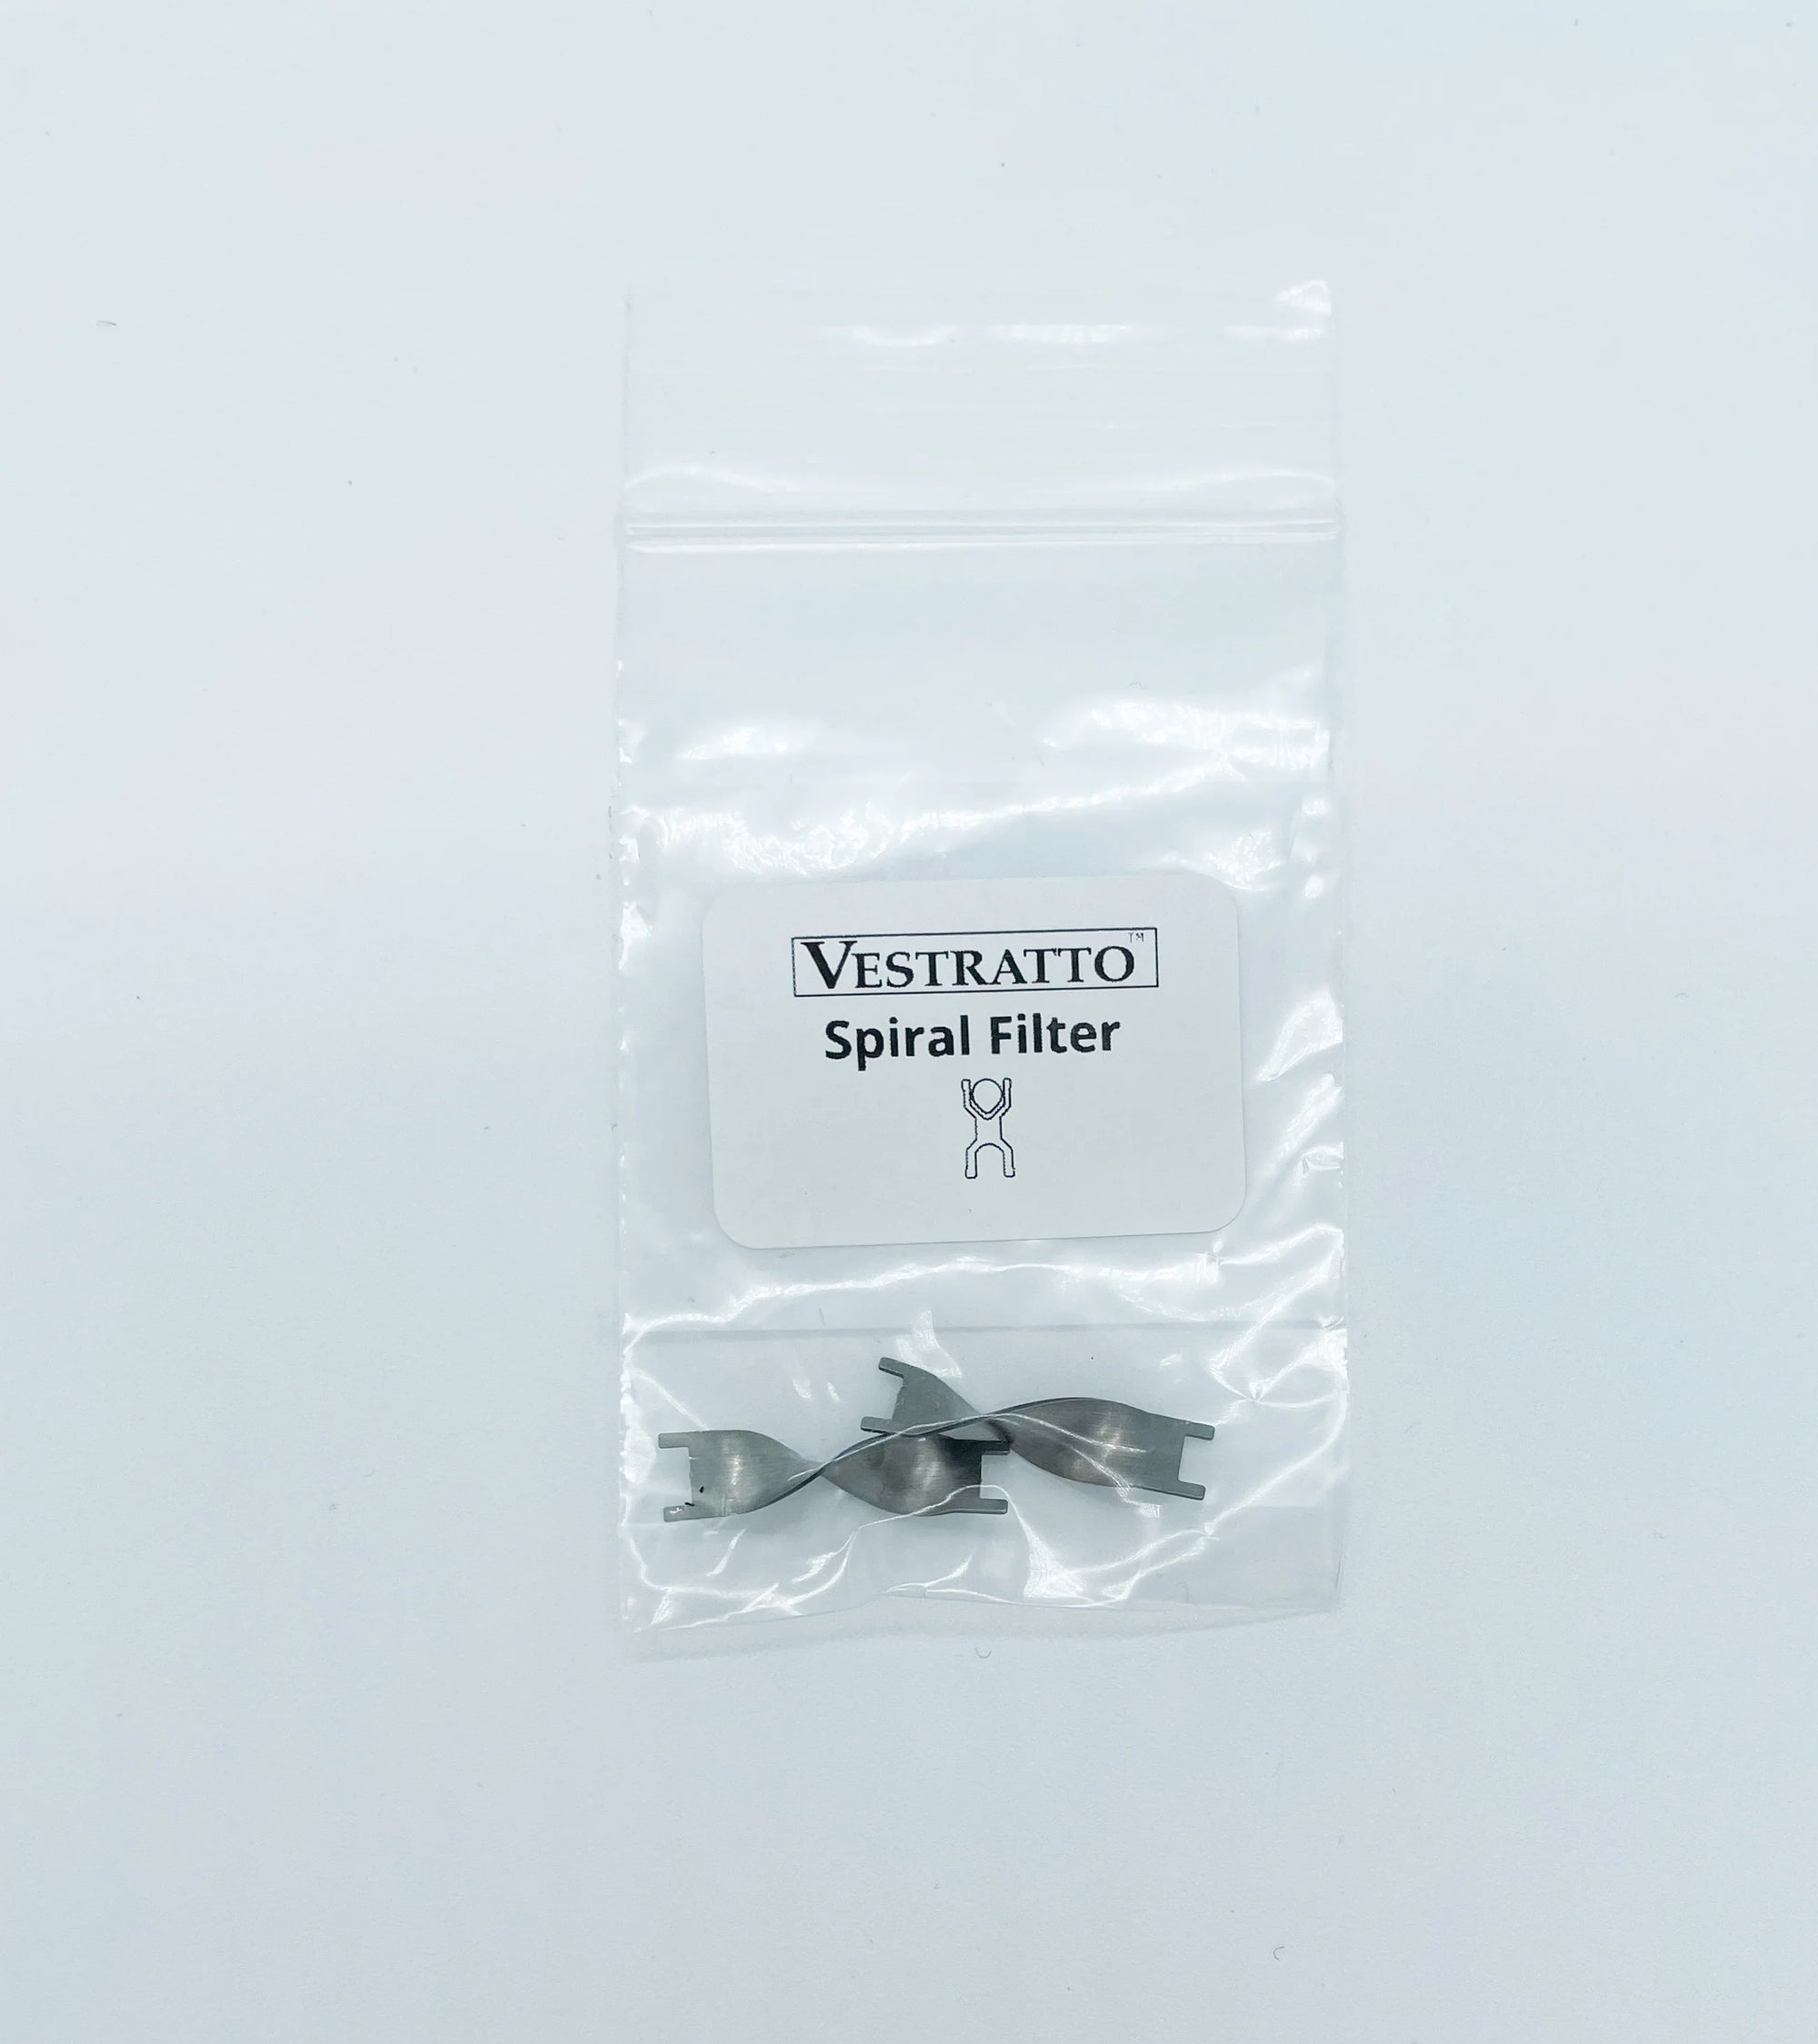 Buy Vestratto Spiral Filter - Wick And Wire Co Melbourne Vape Shop, Victoria Australia